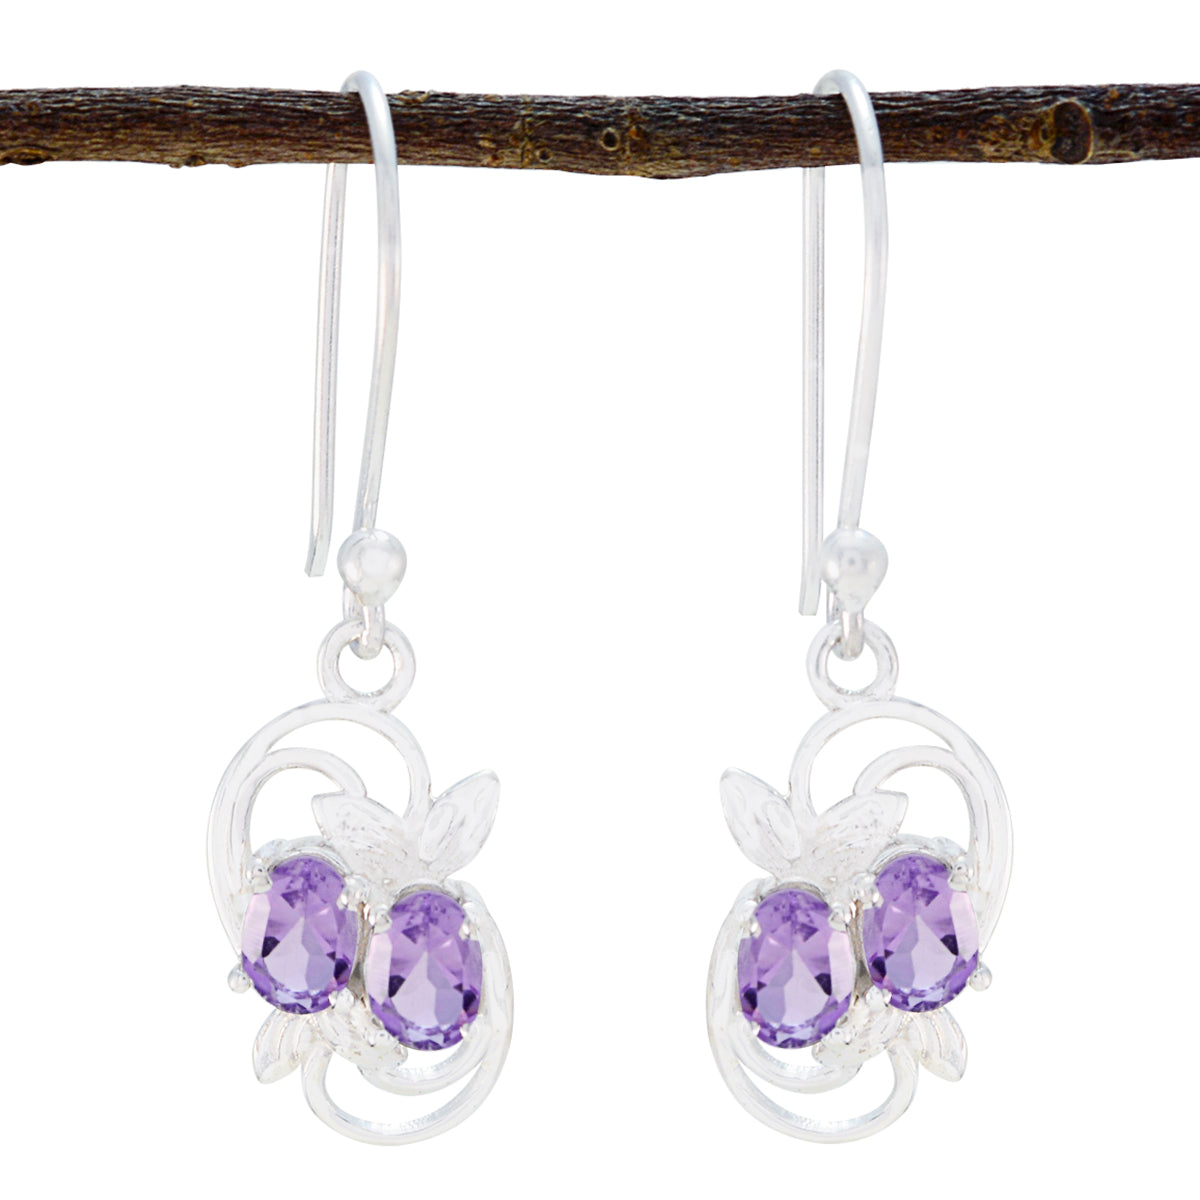 Riyo Nice Gemstone oval Faceted Purple Amethyst Silver Earrings anniversary gift